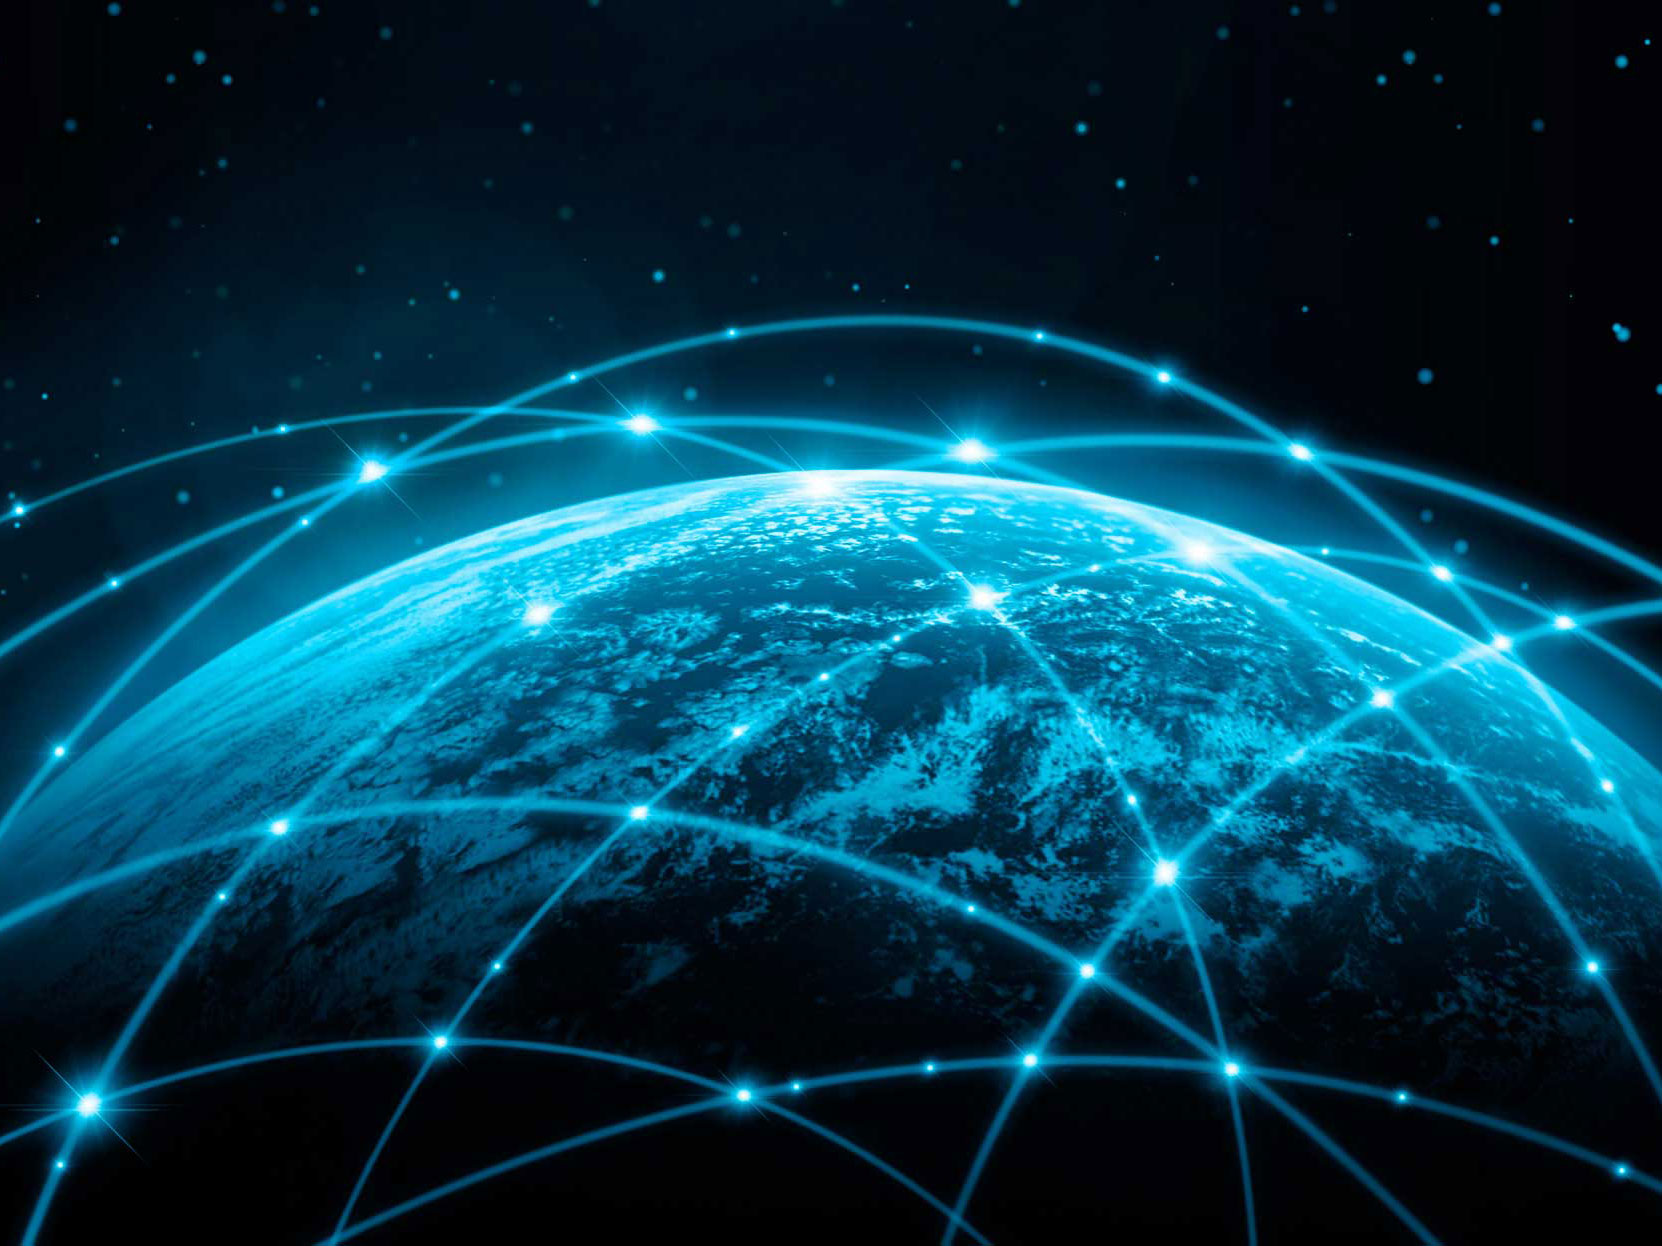 satellite_communications_network-fullsize